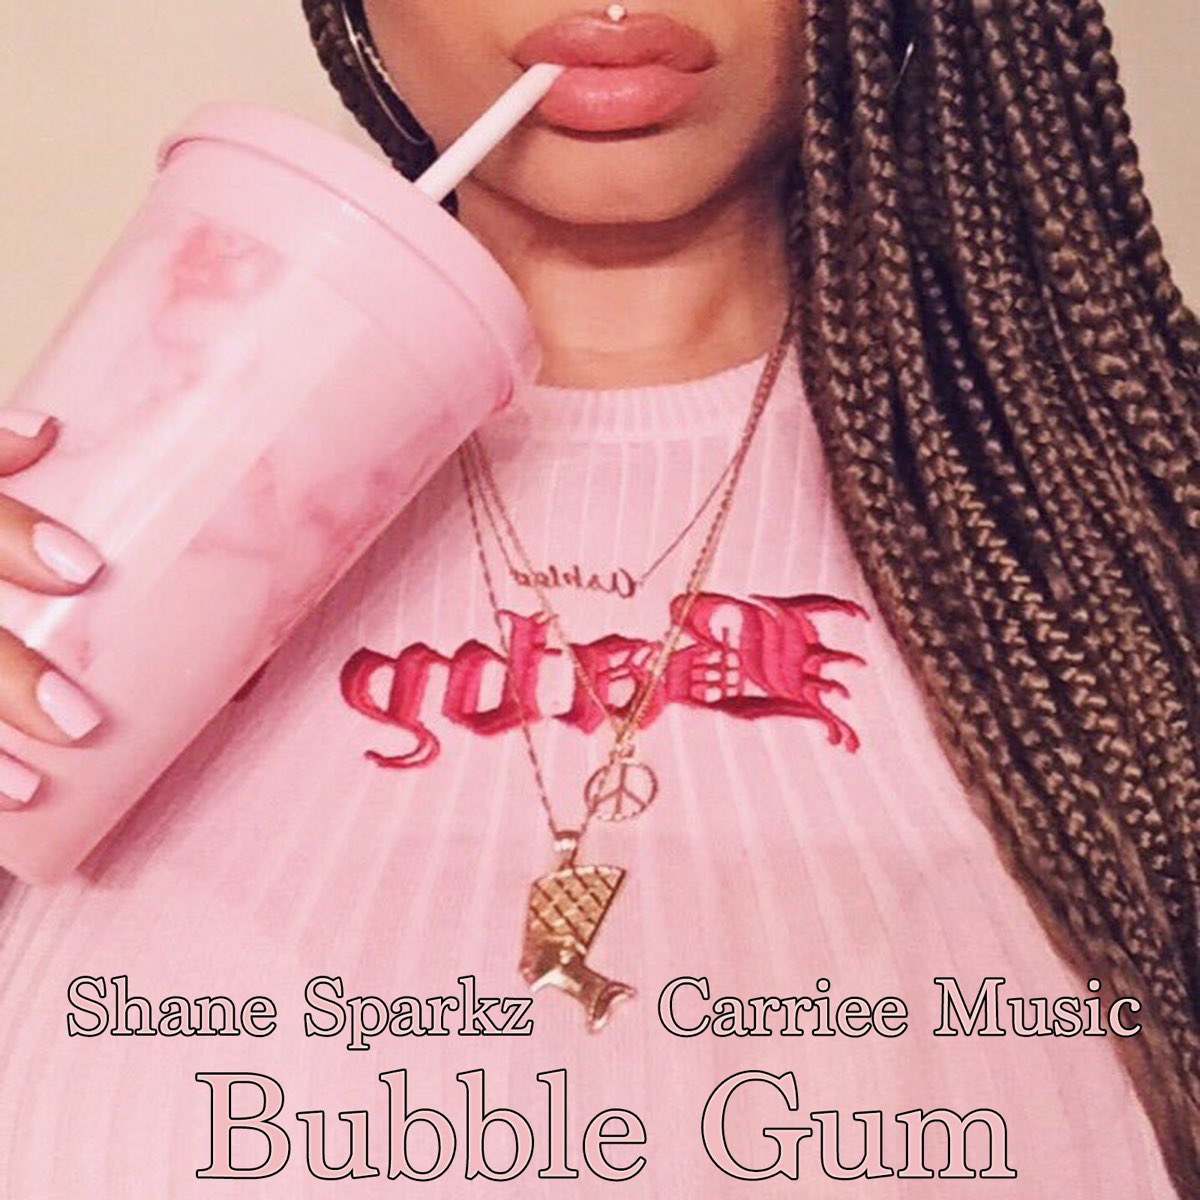 Bubble gum песня. Bubble Gum альбом. Bubblegum Music альбом. Bubblegum текст.